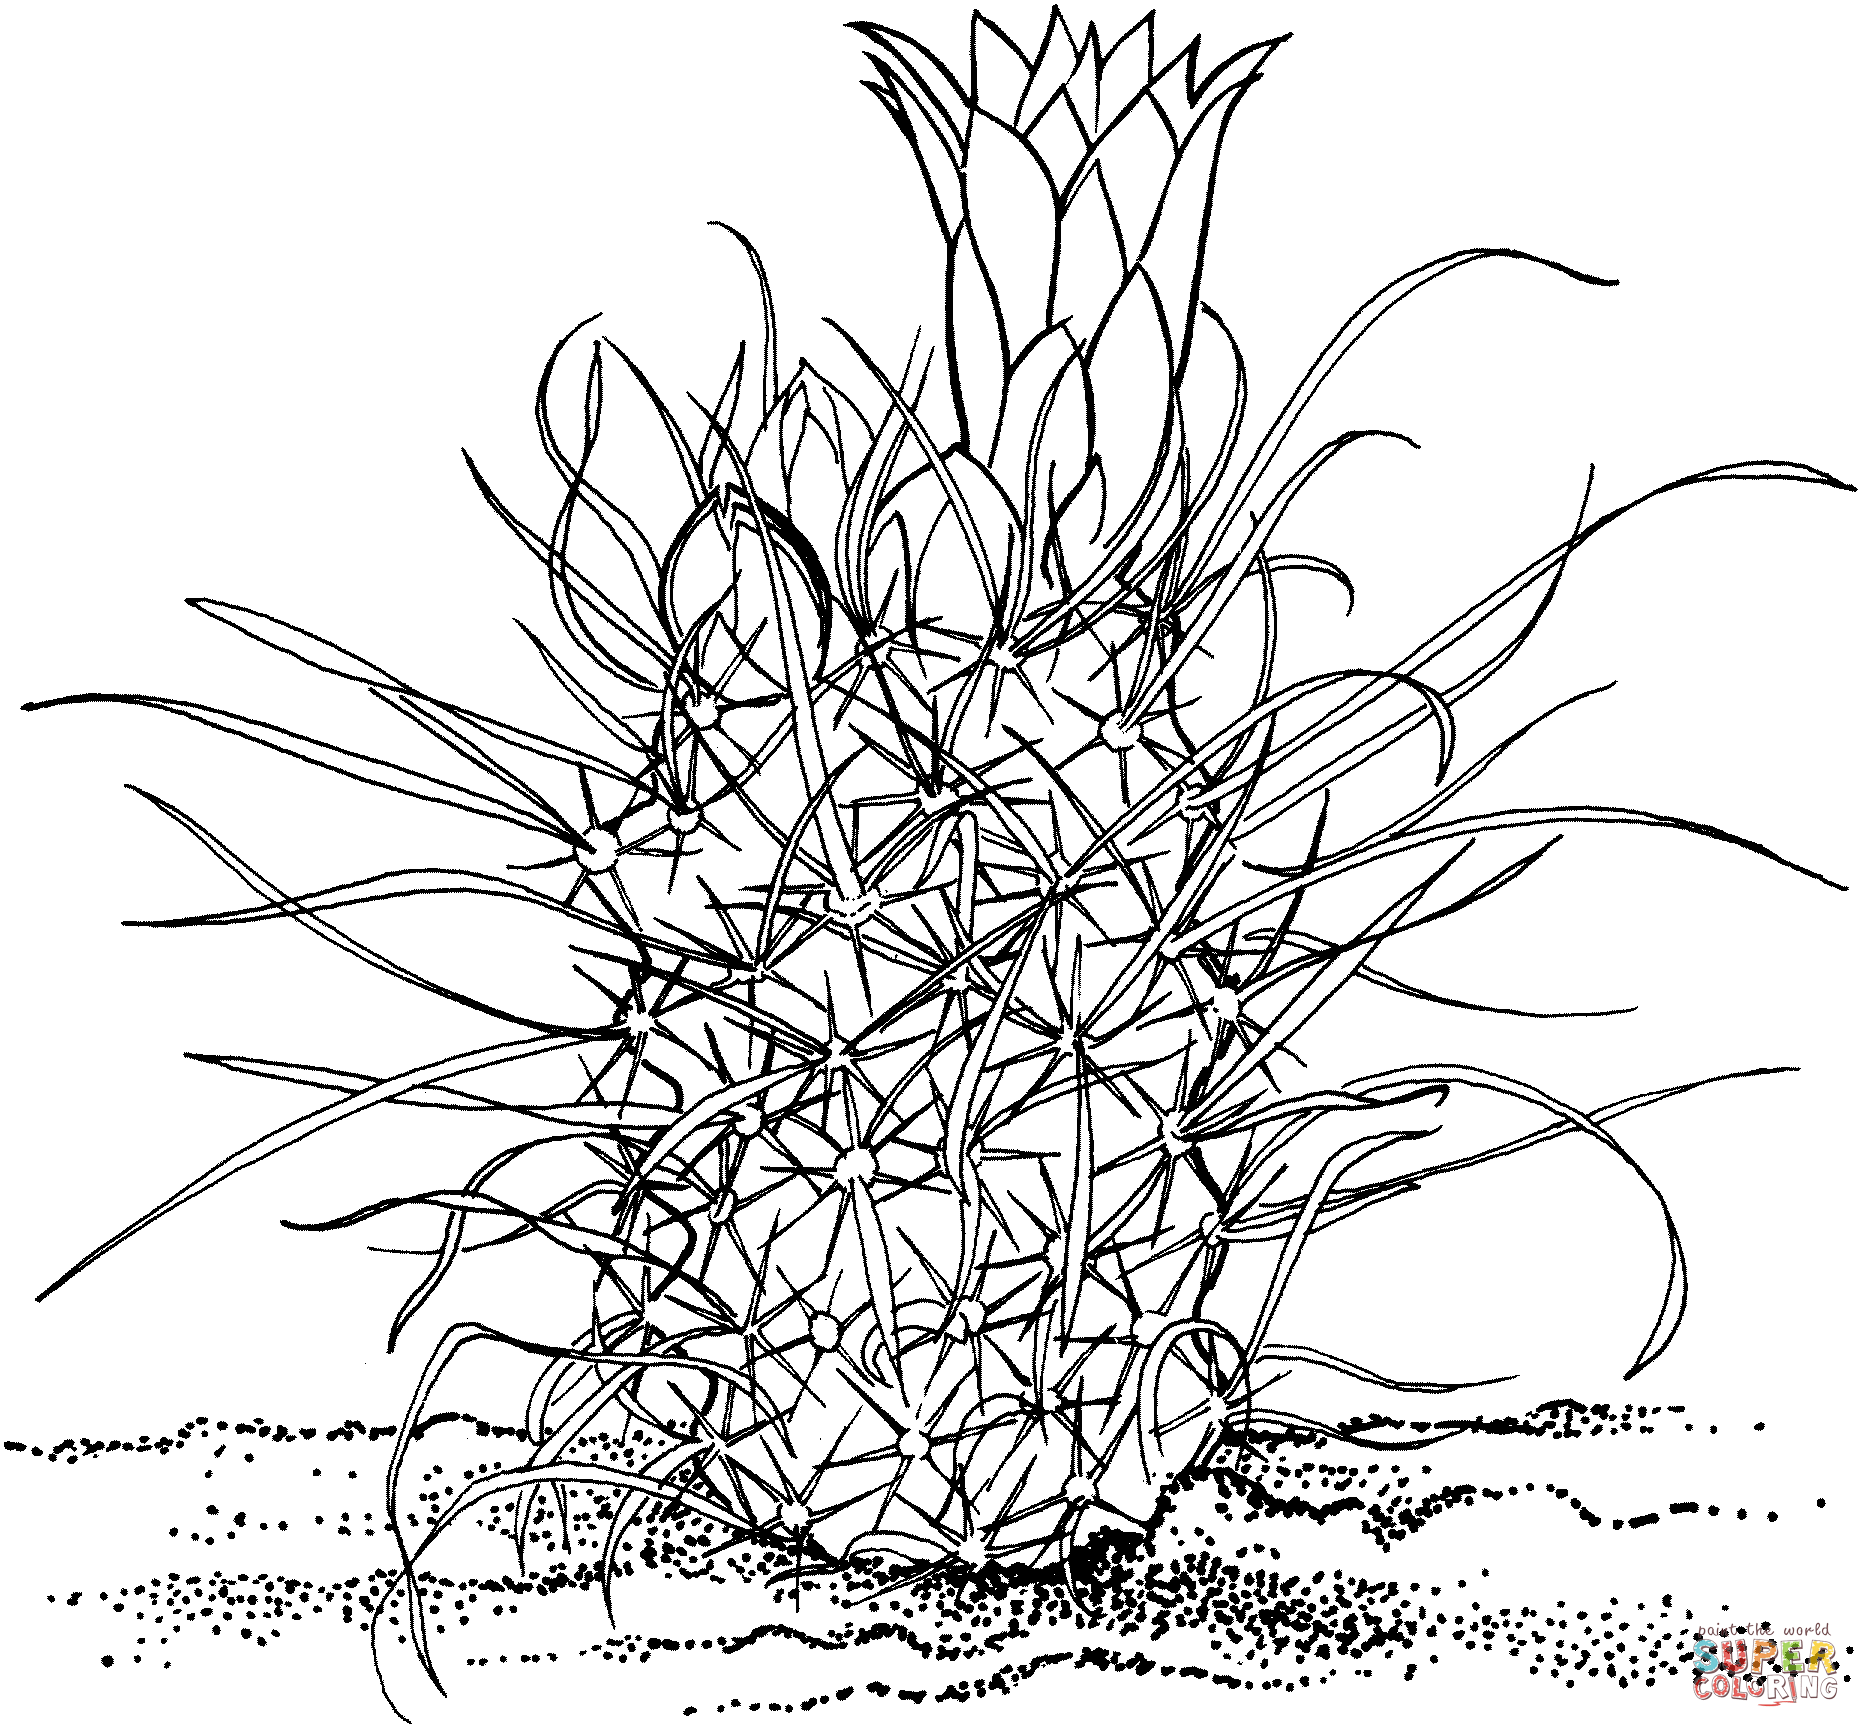 Toumeya Papyracantha ou Gramma Grass Cactus de Cactus